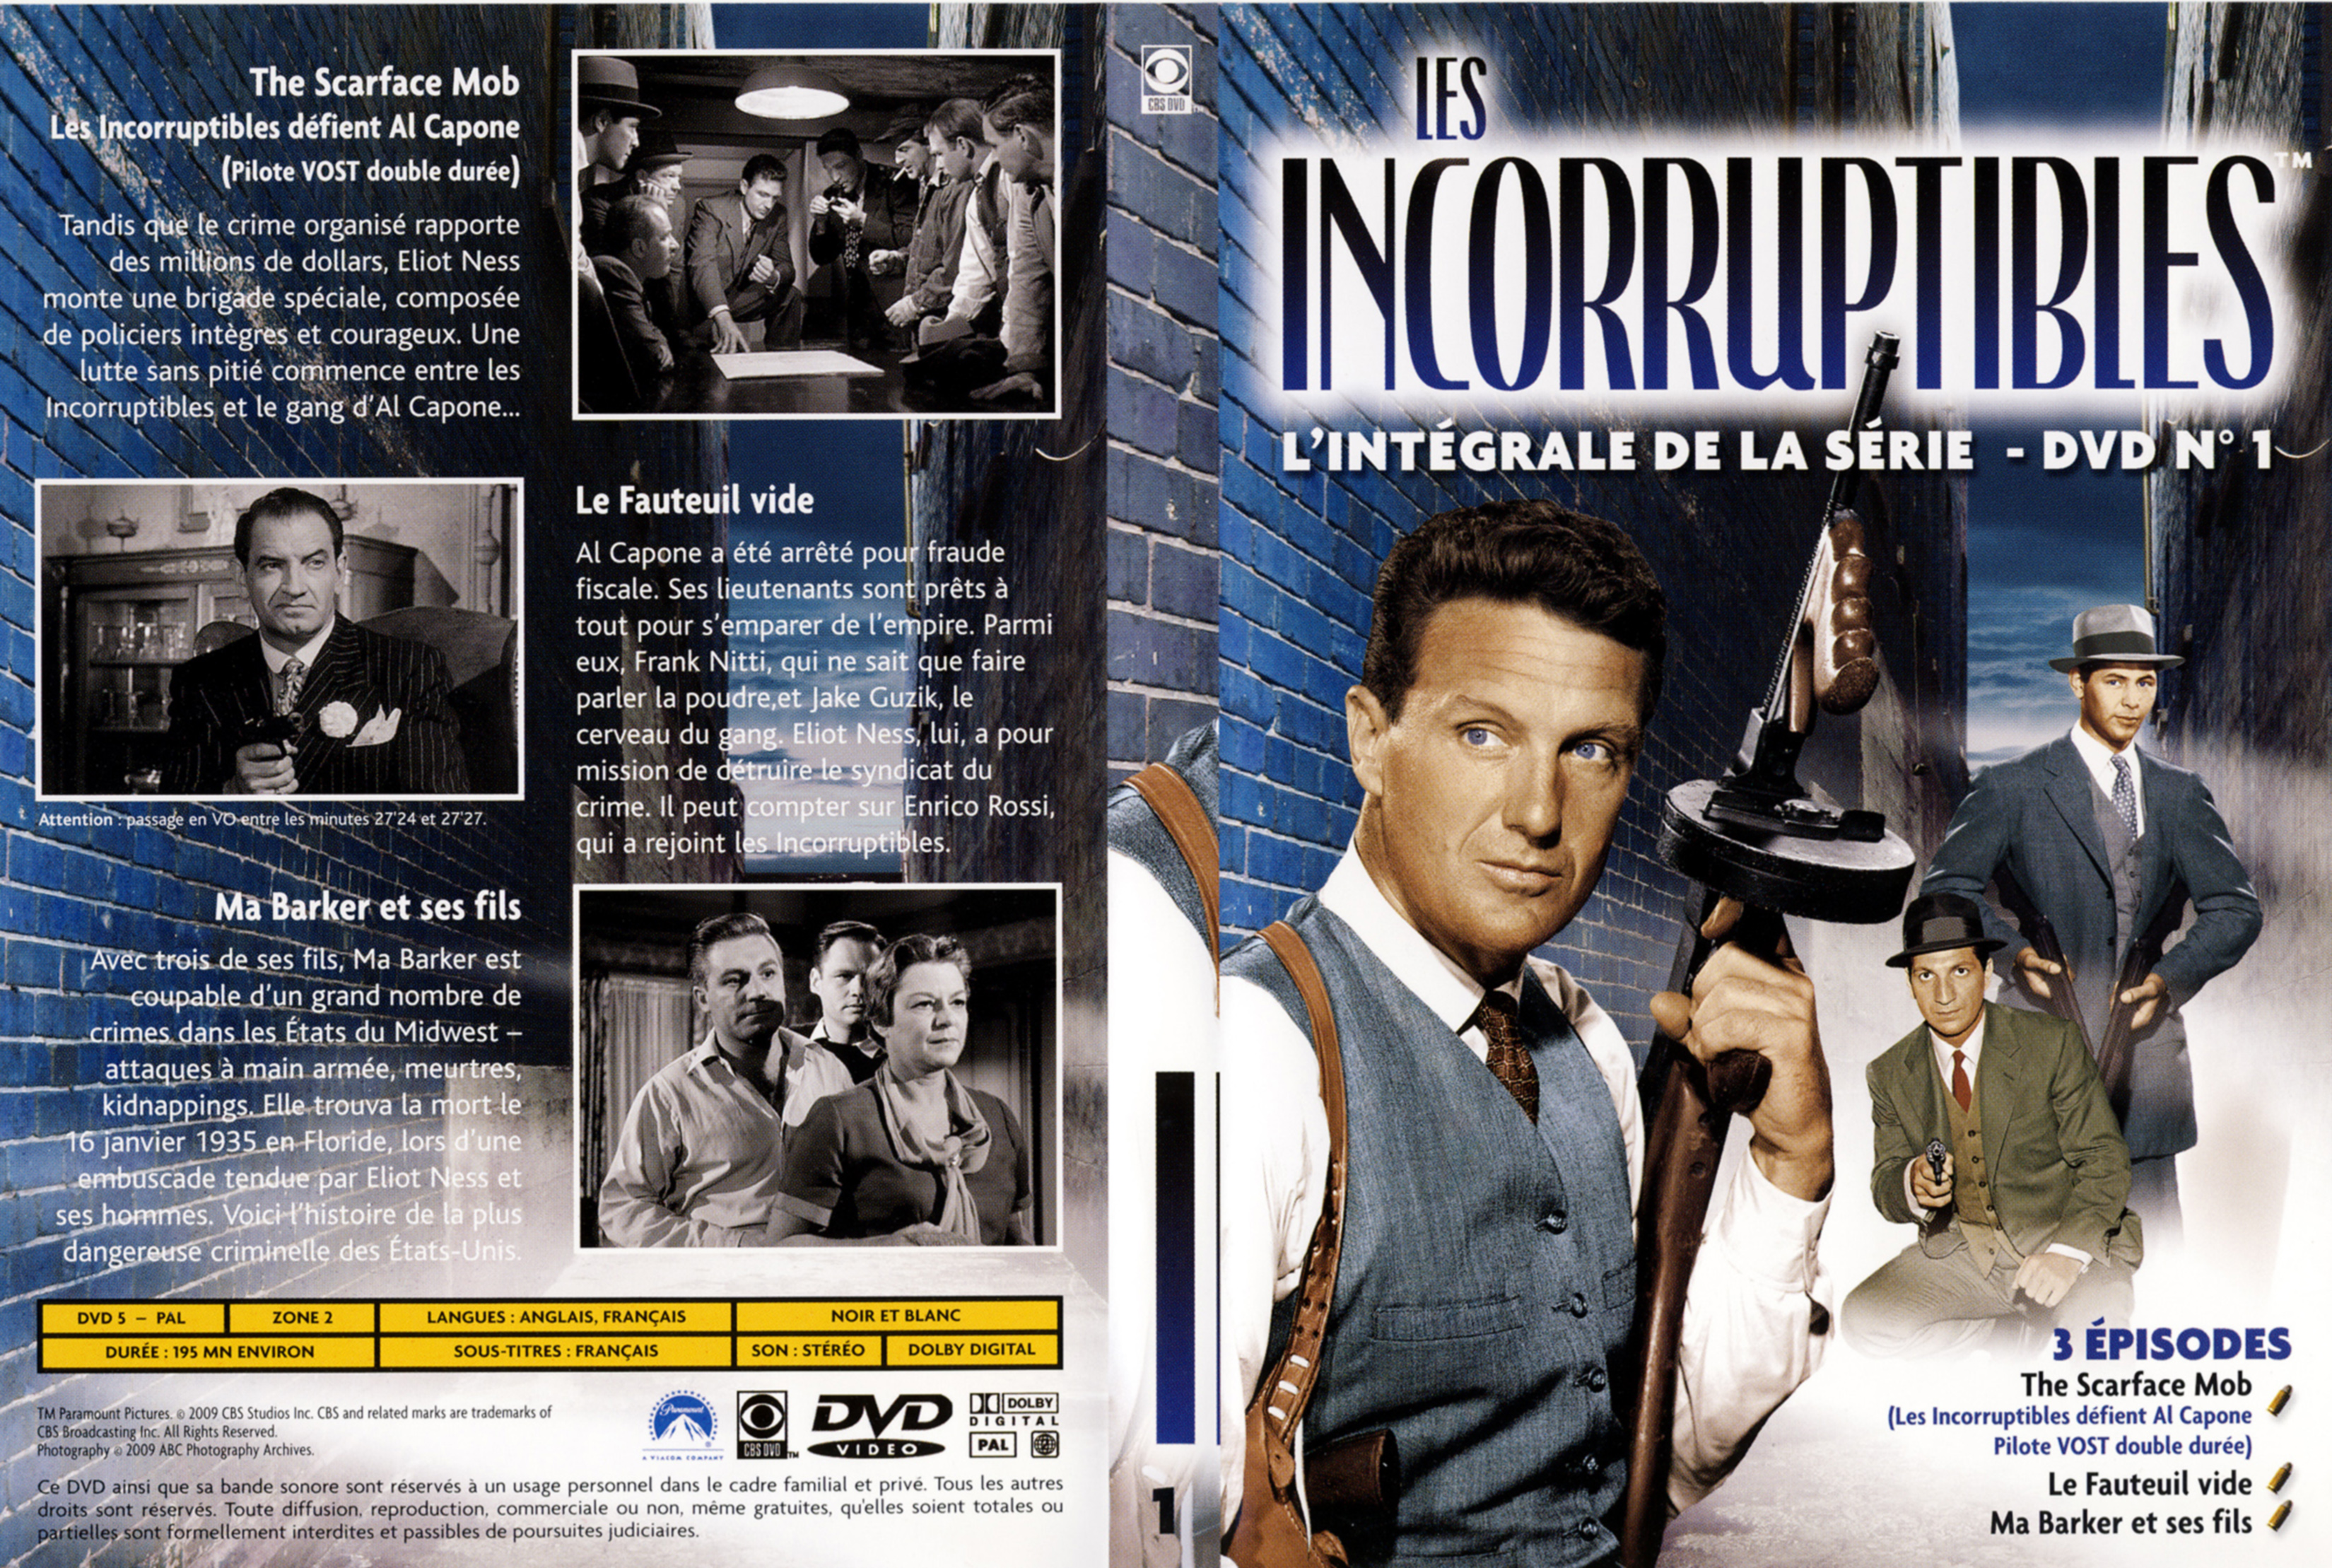 Jaquette DVD Les incorruptibles intgrale DVD 01